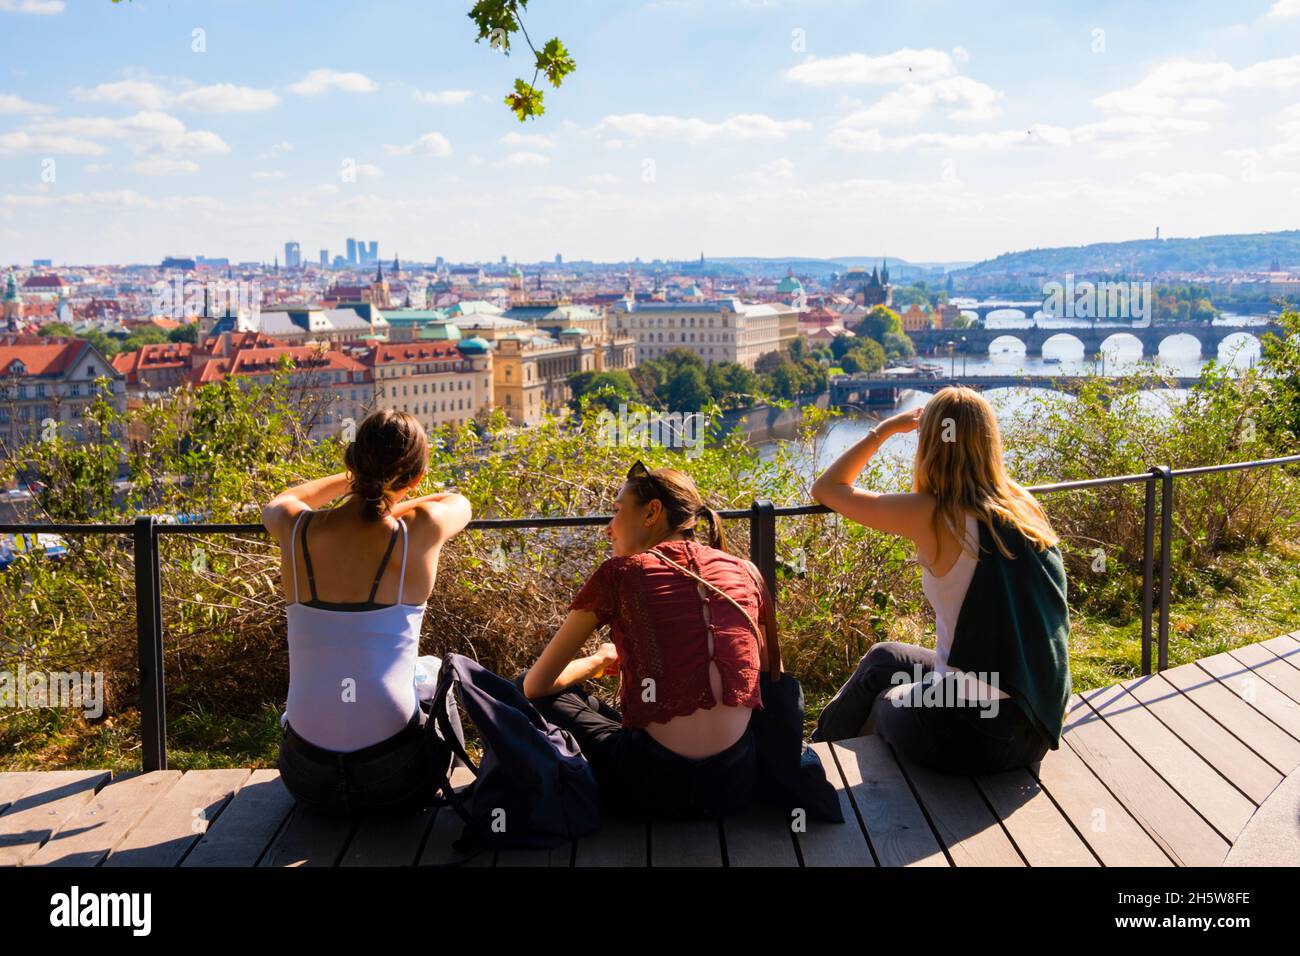 Letenská vyhlídka, Aussichtsplattform mit Blick auf die Moldau und die Altstadt, Letenske Sady, Letna Park, Prag, Tschechische Republik Stockfoto